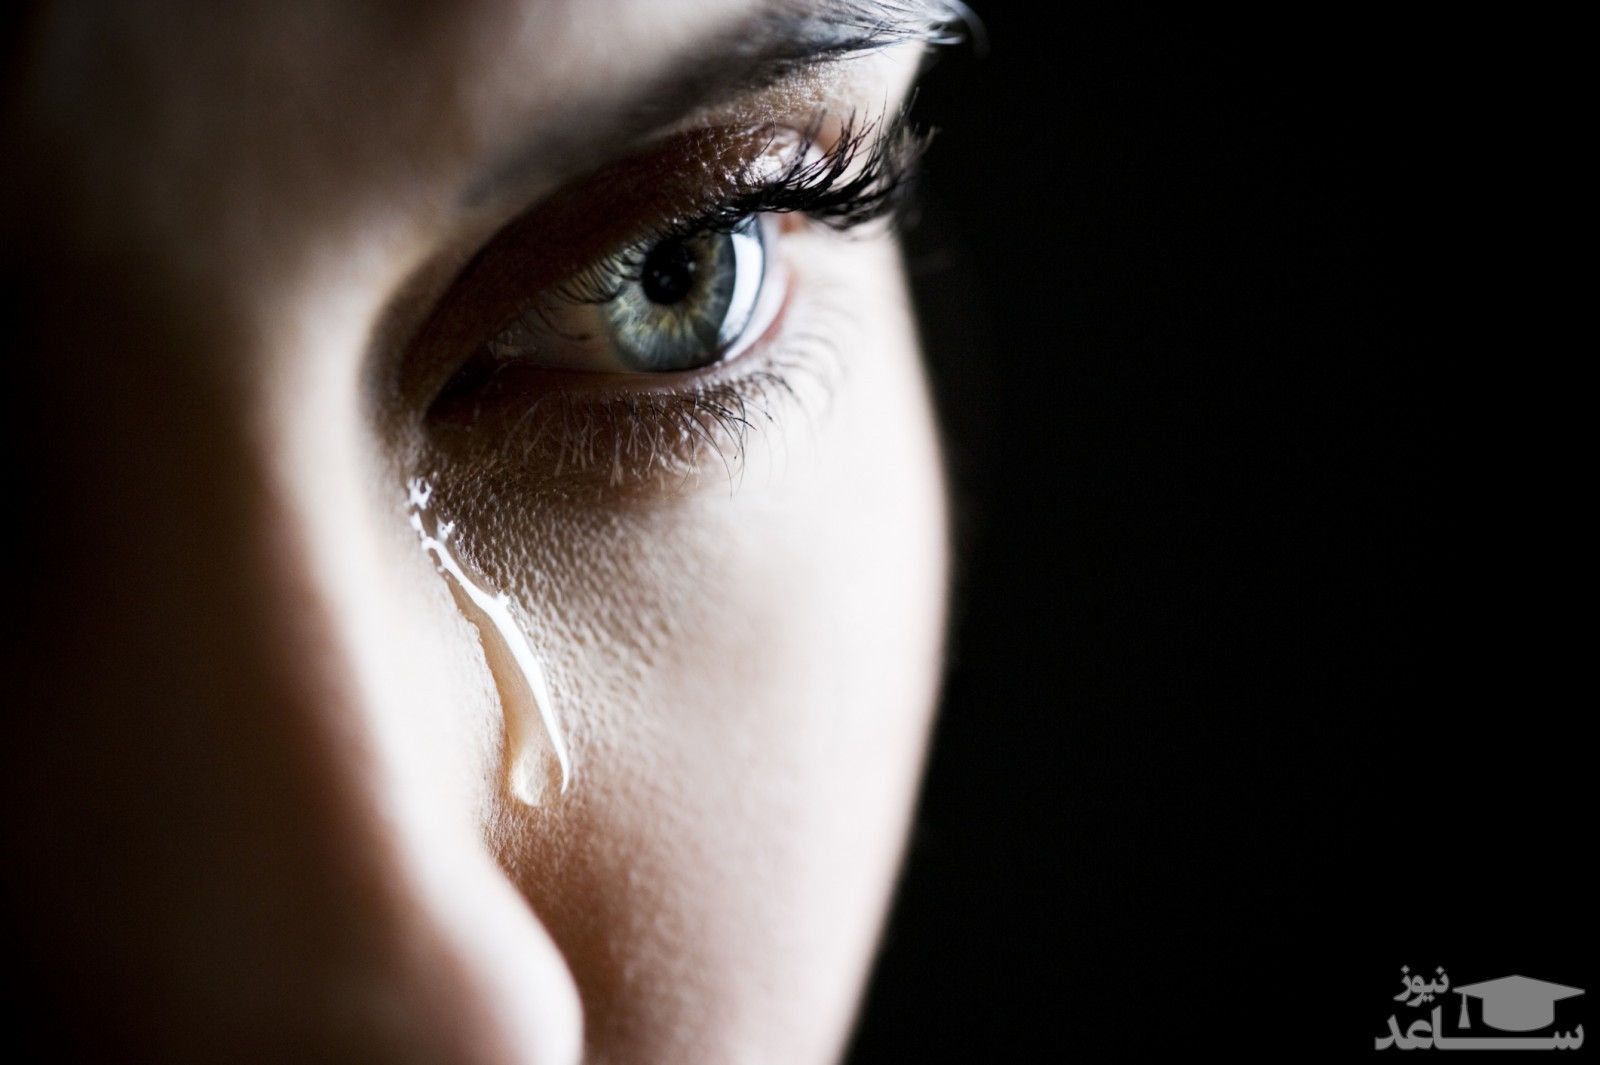 علت گریه کردن بعد از ارضای جنسی چیست؟